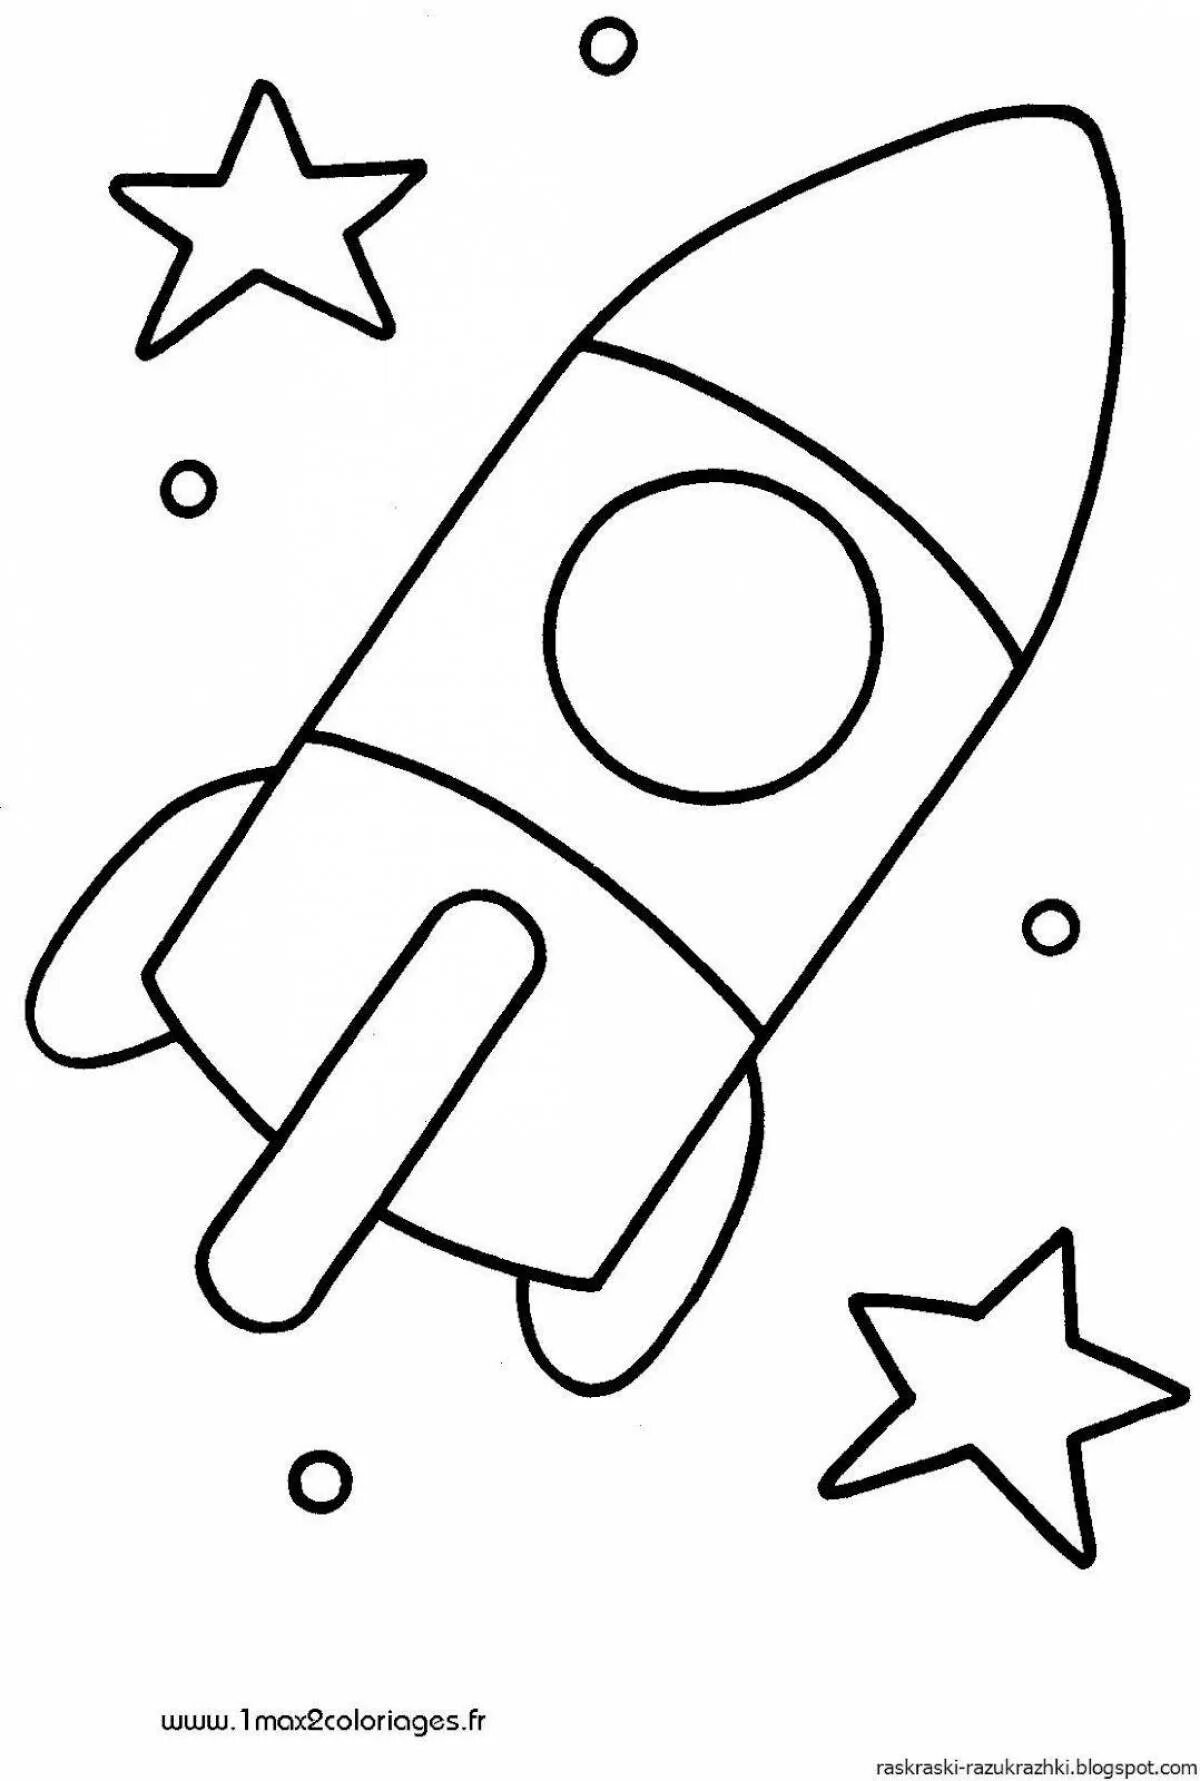 Ракета раскраска. Ракета раскраска для малышей. Раскраски на тему космос для детей 3-4 лет. Раскраска для малышей. Космос. Поделка ко дню космонавтики шаблоны распечатать